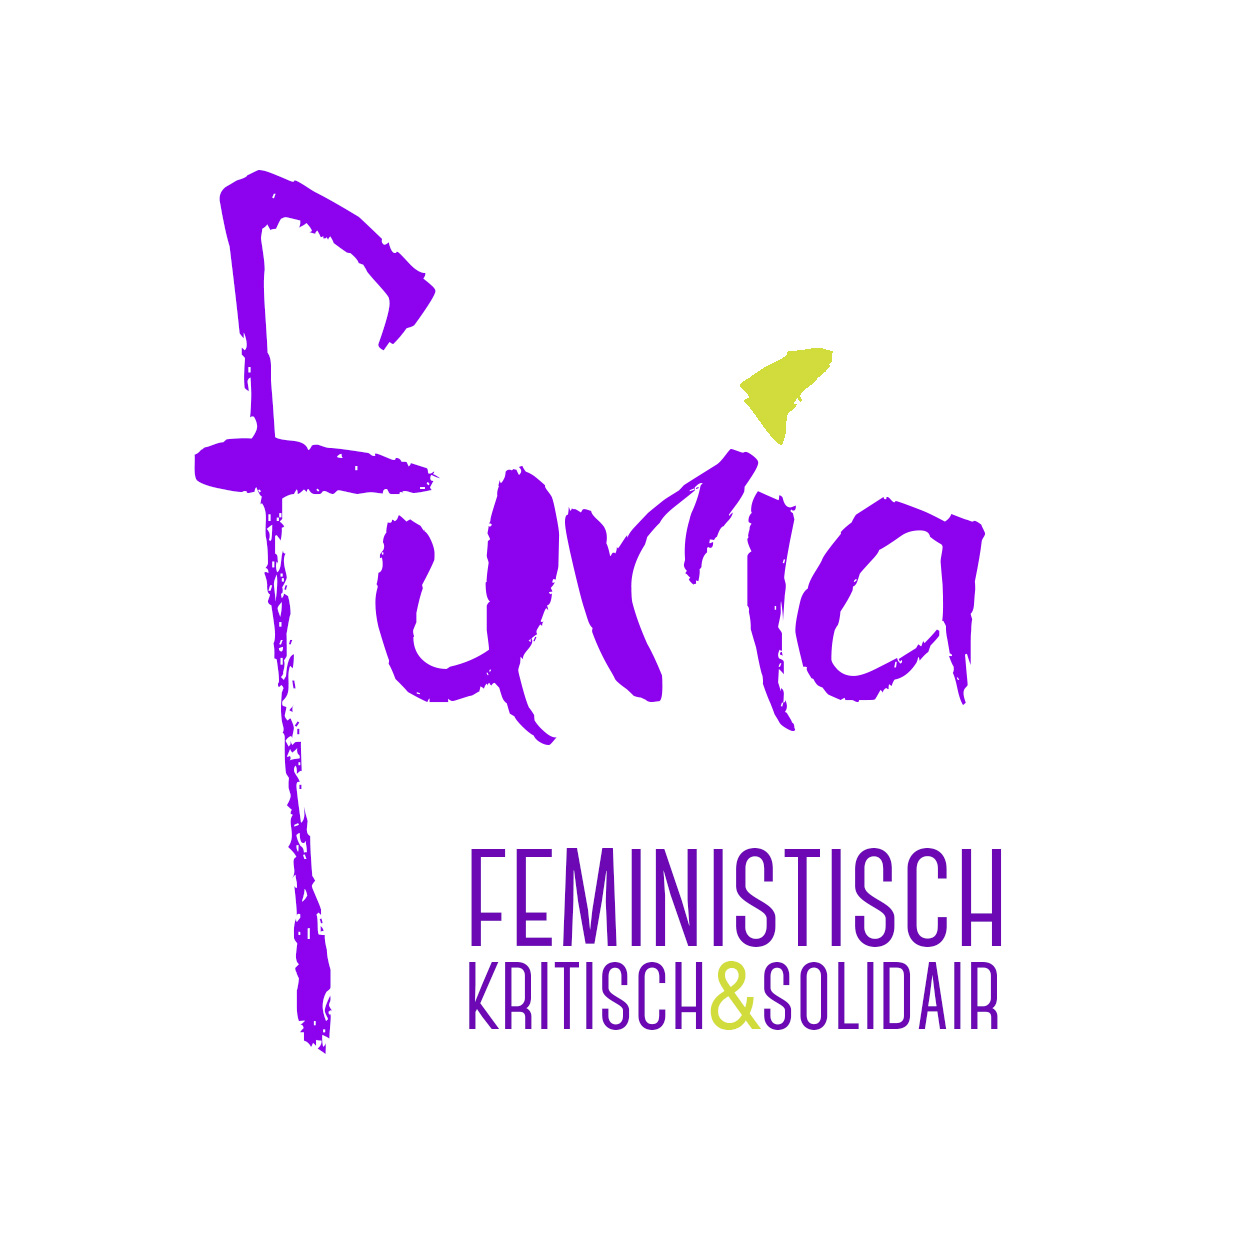 Furia. Feministische, kritisch en solidair